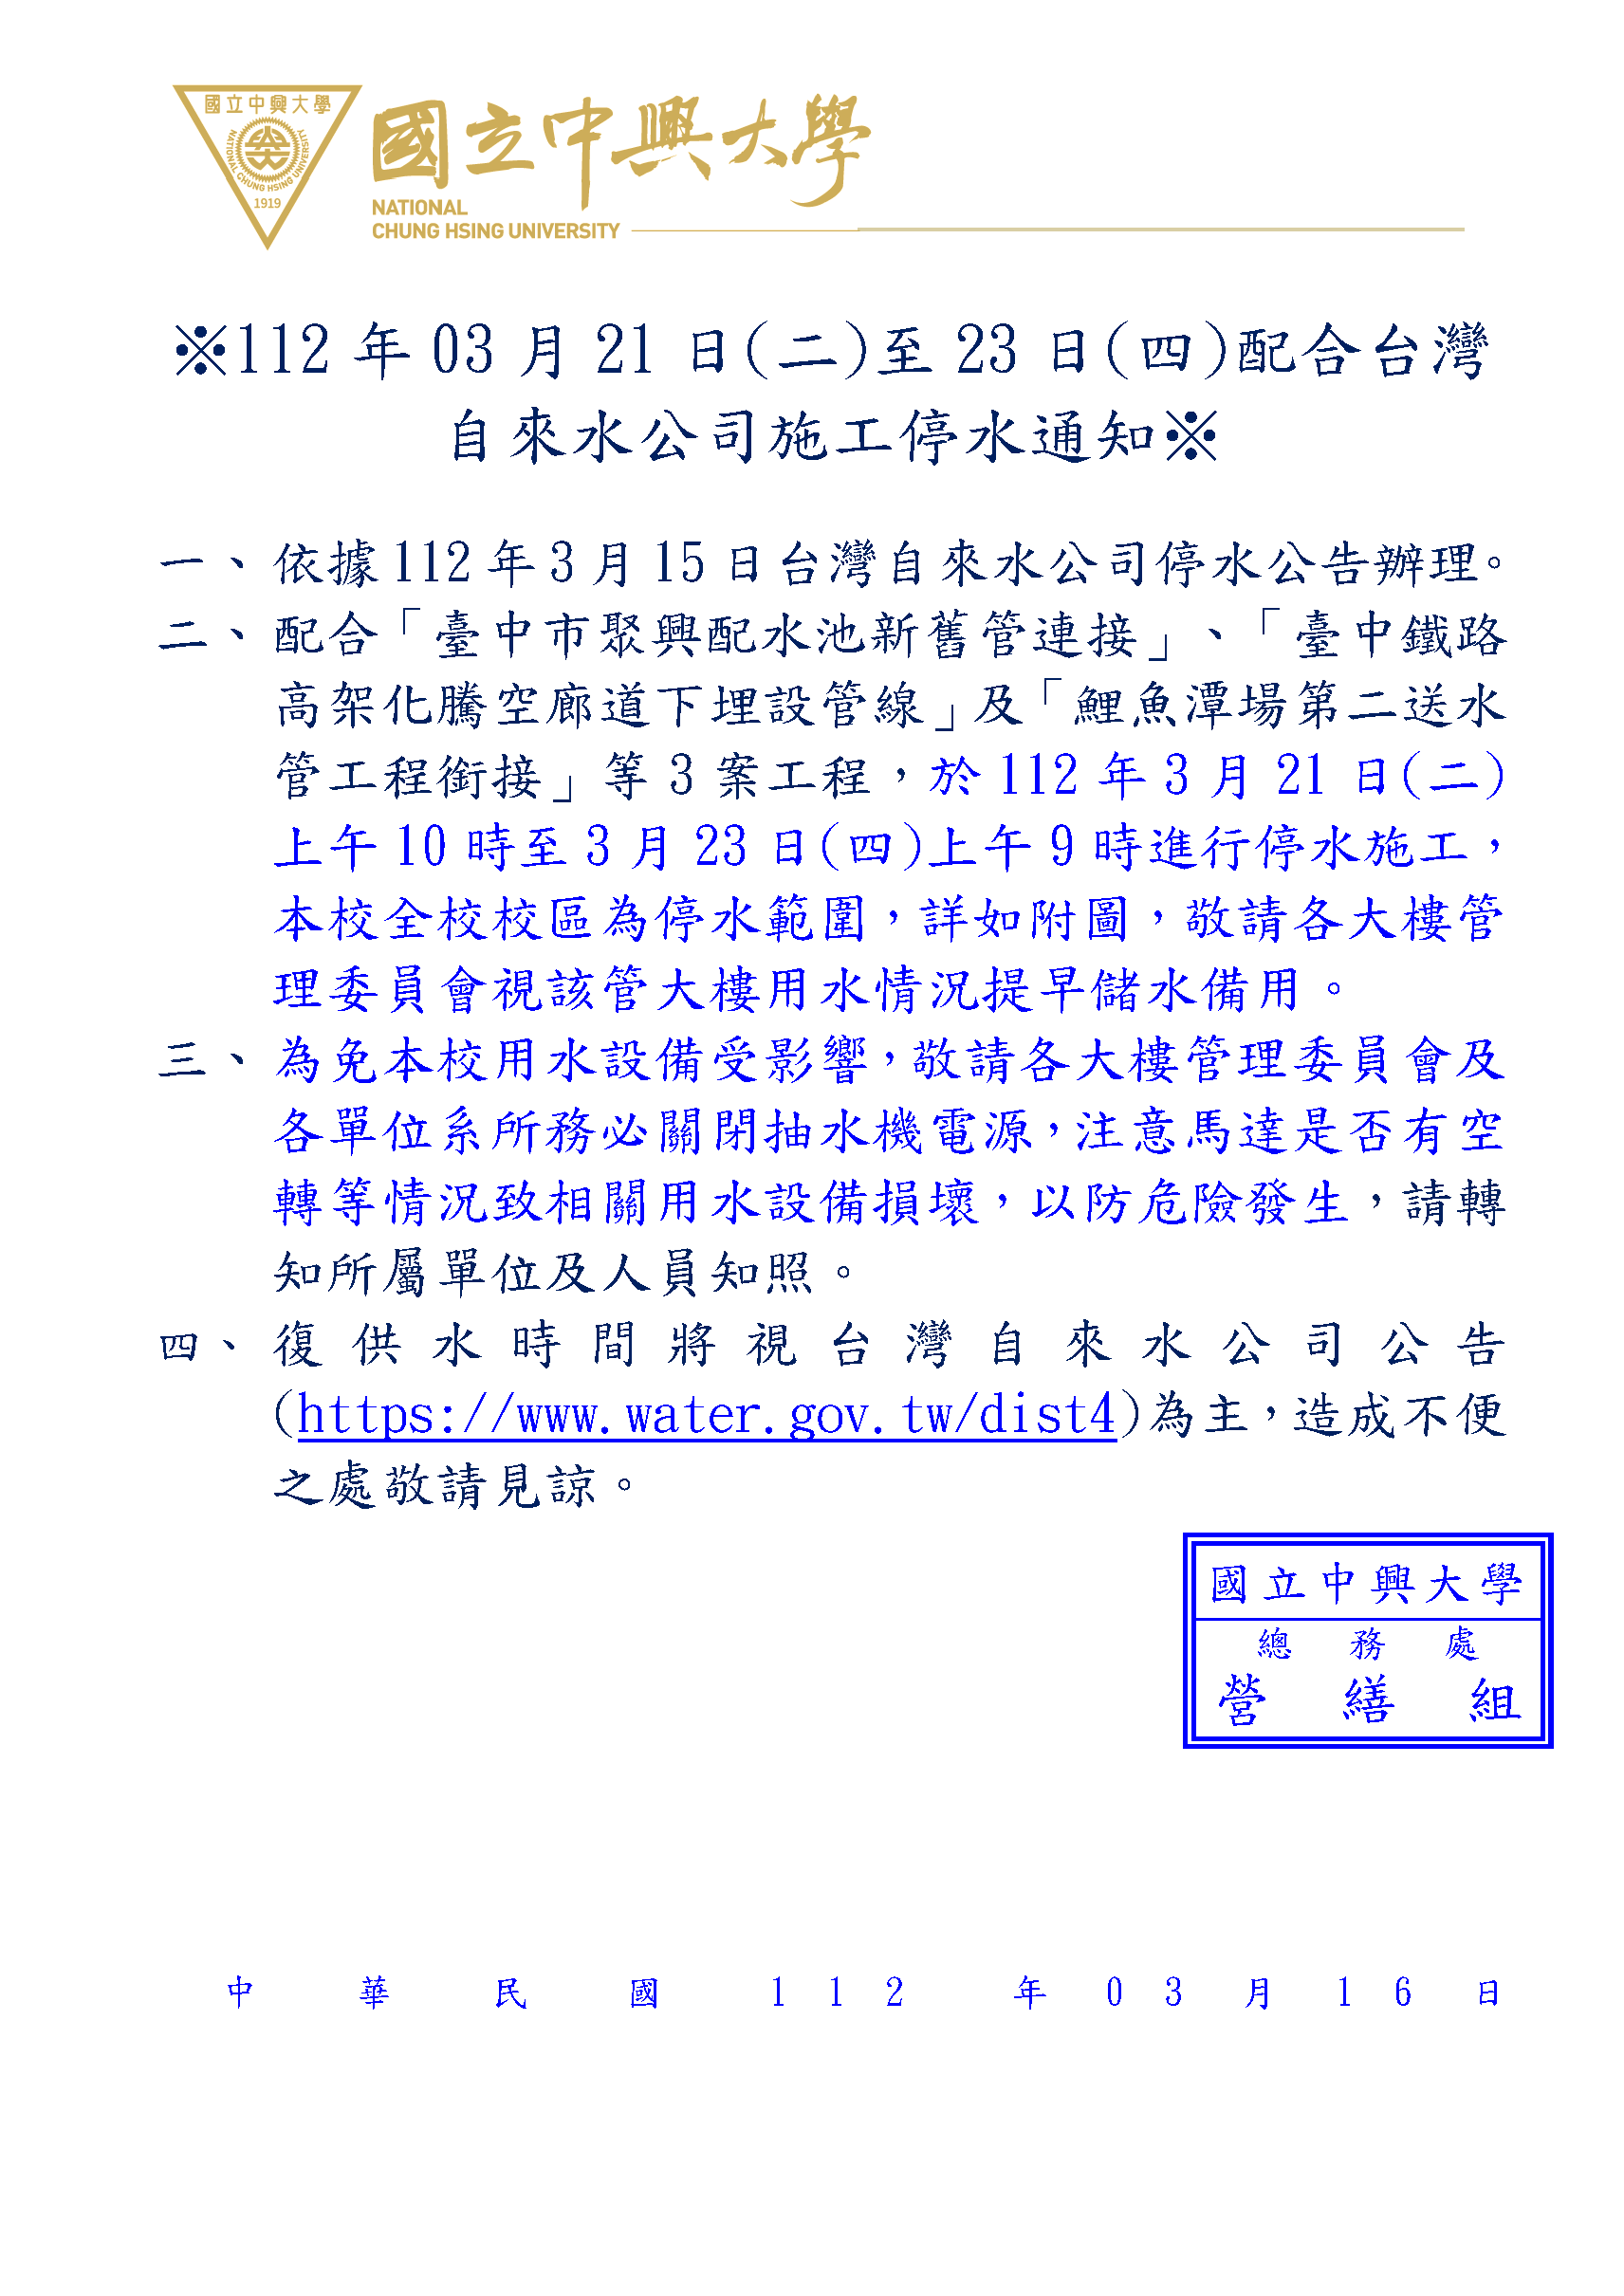 ※112年03月21日(二)至23日(四)配合台灣自來水公司施工停水通知※_頁面_1